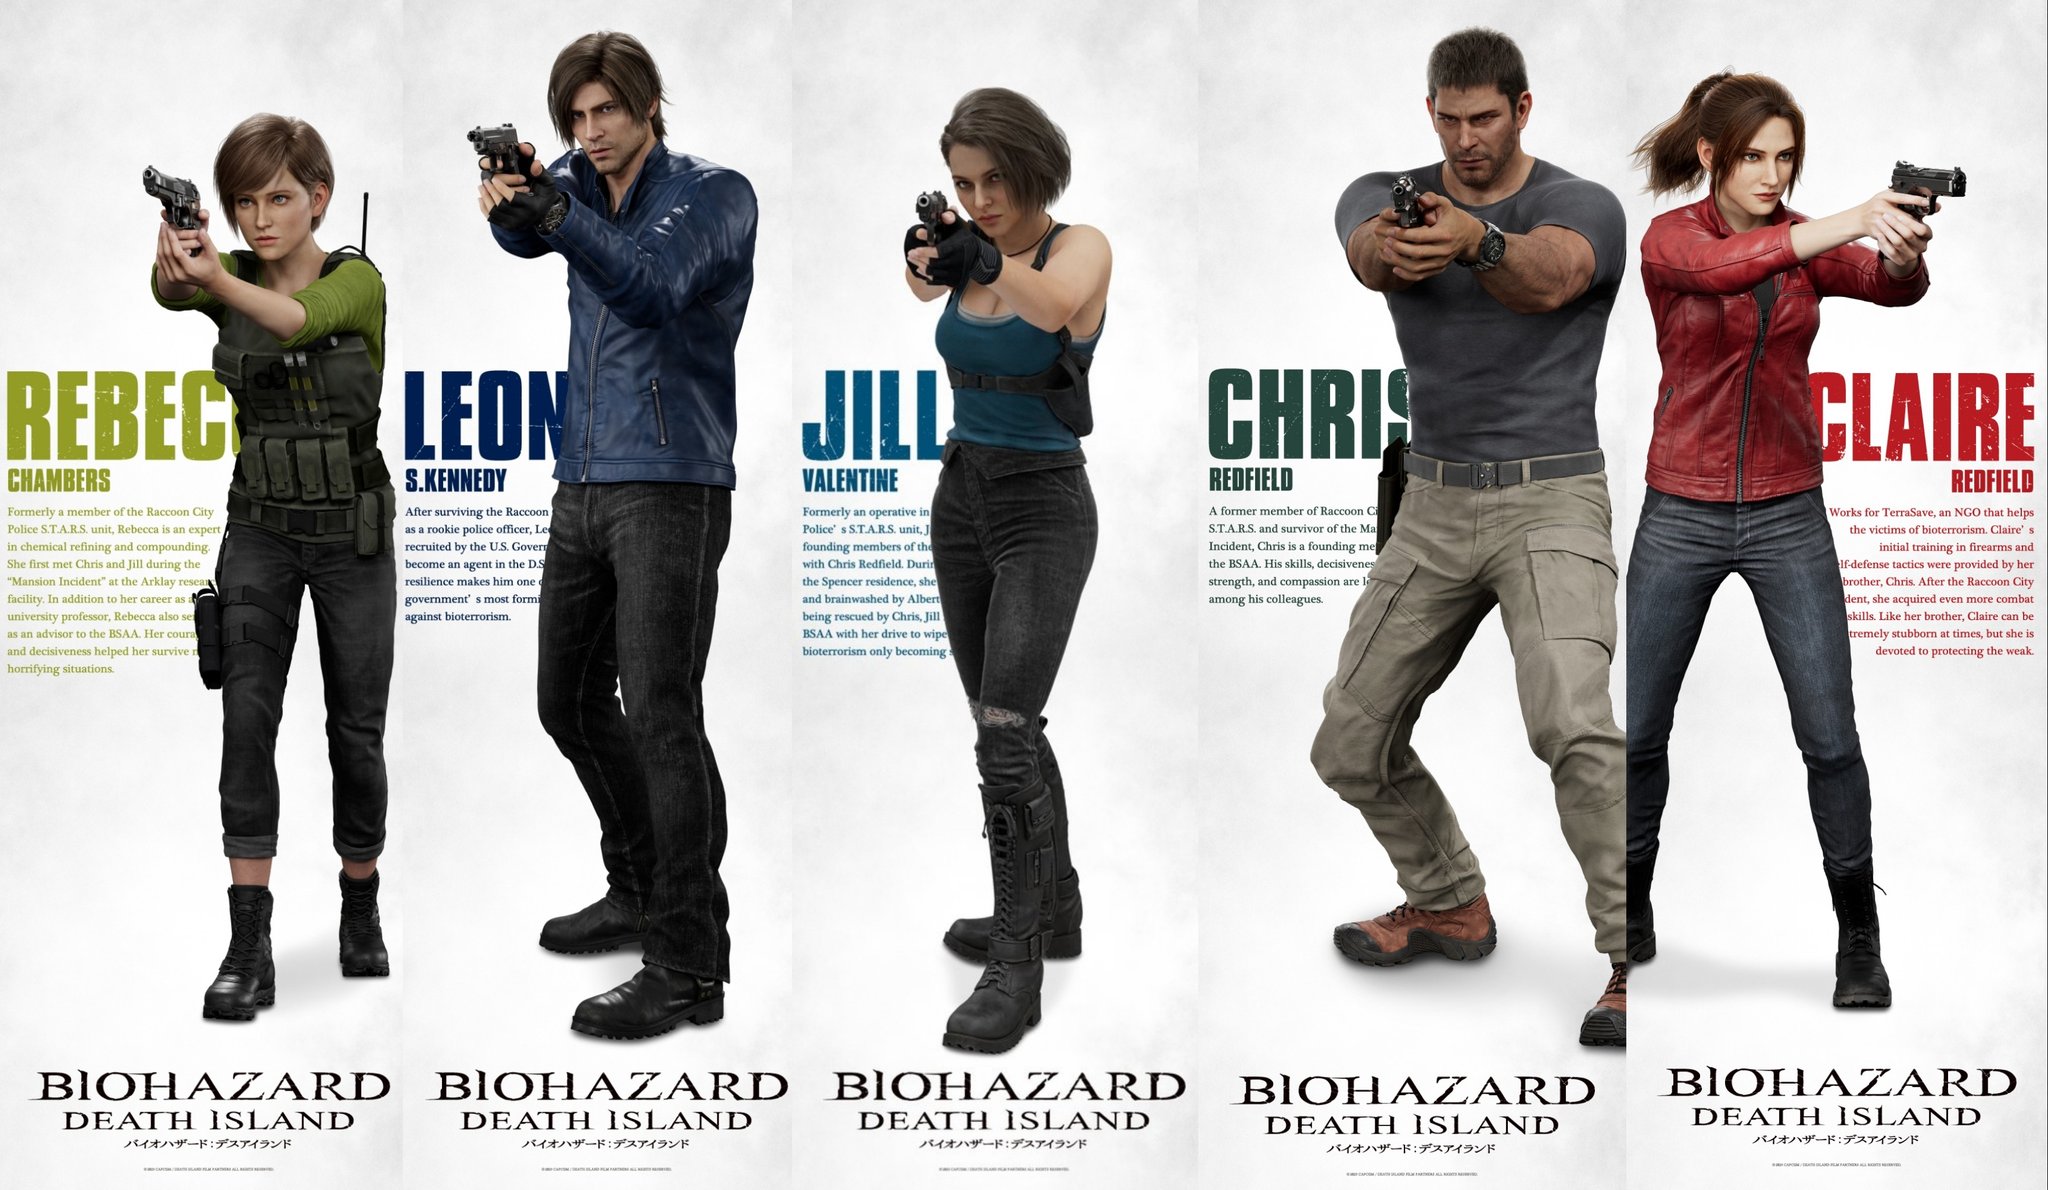 Animação Resident Evil: Death Island sai em julho nos EUA em streaming e  mídia física - Adrenaline